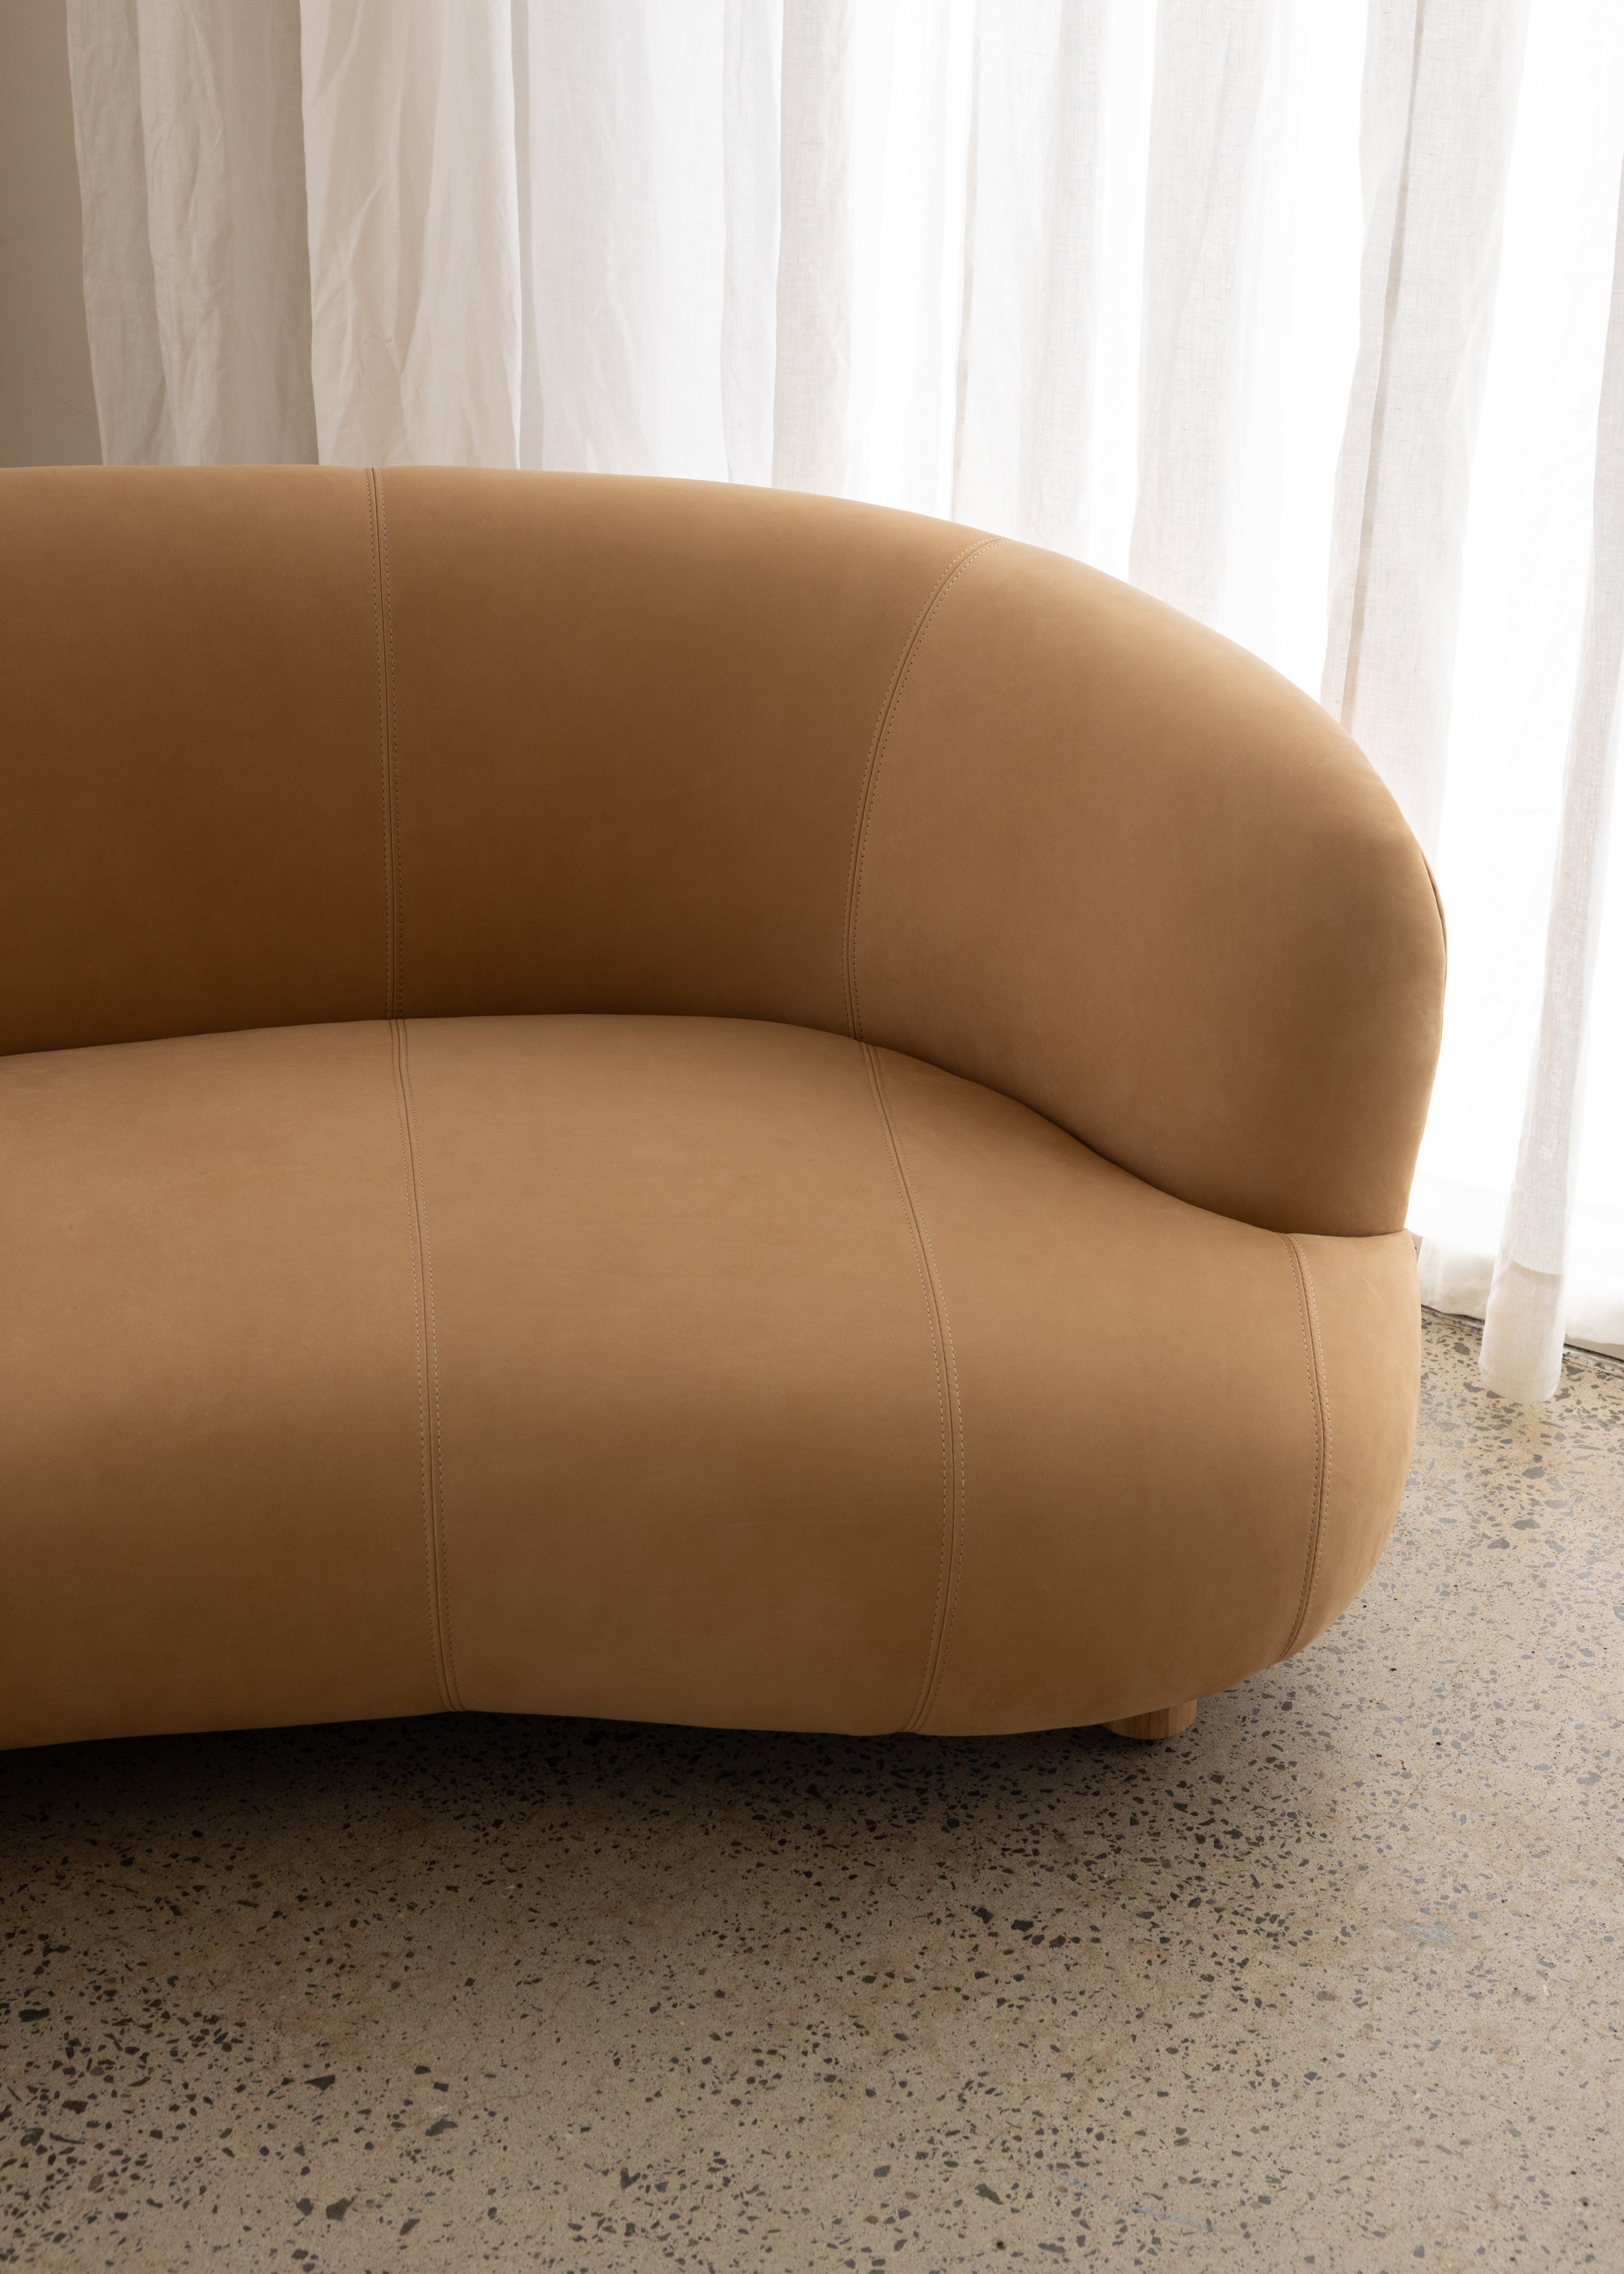 Tribecca Sofa 3 Seat / Leather / Latte